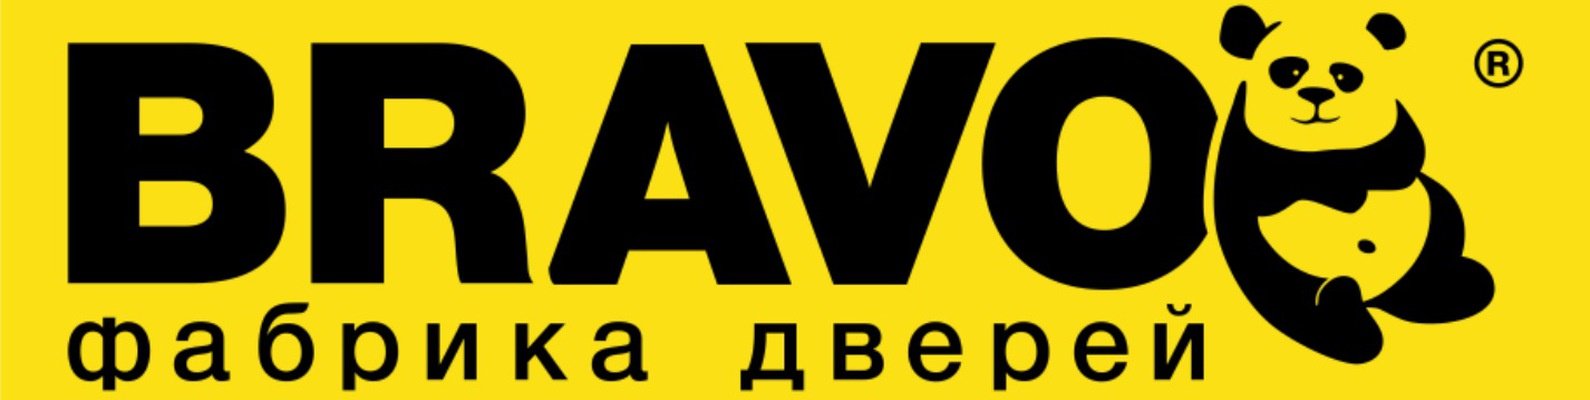 Be bravo. Браво фабрика дверей лого. Двери Браво логотип. Логотип фабрика Браво. Bravo двери логотип.